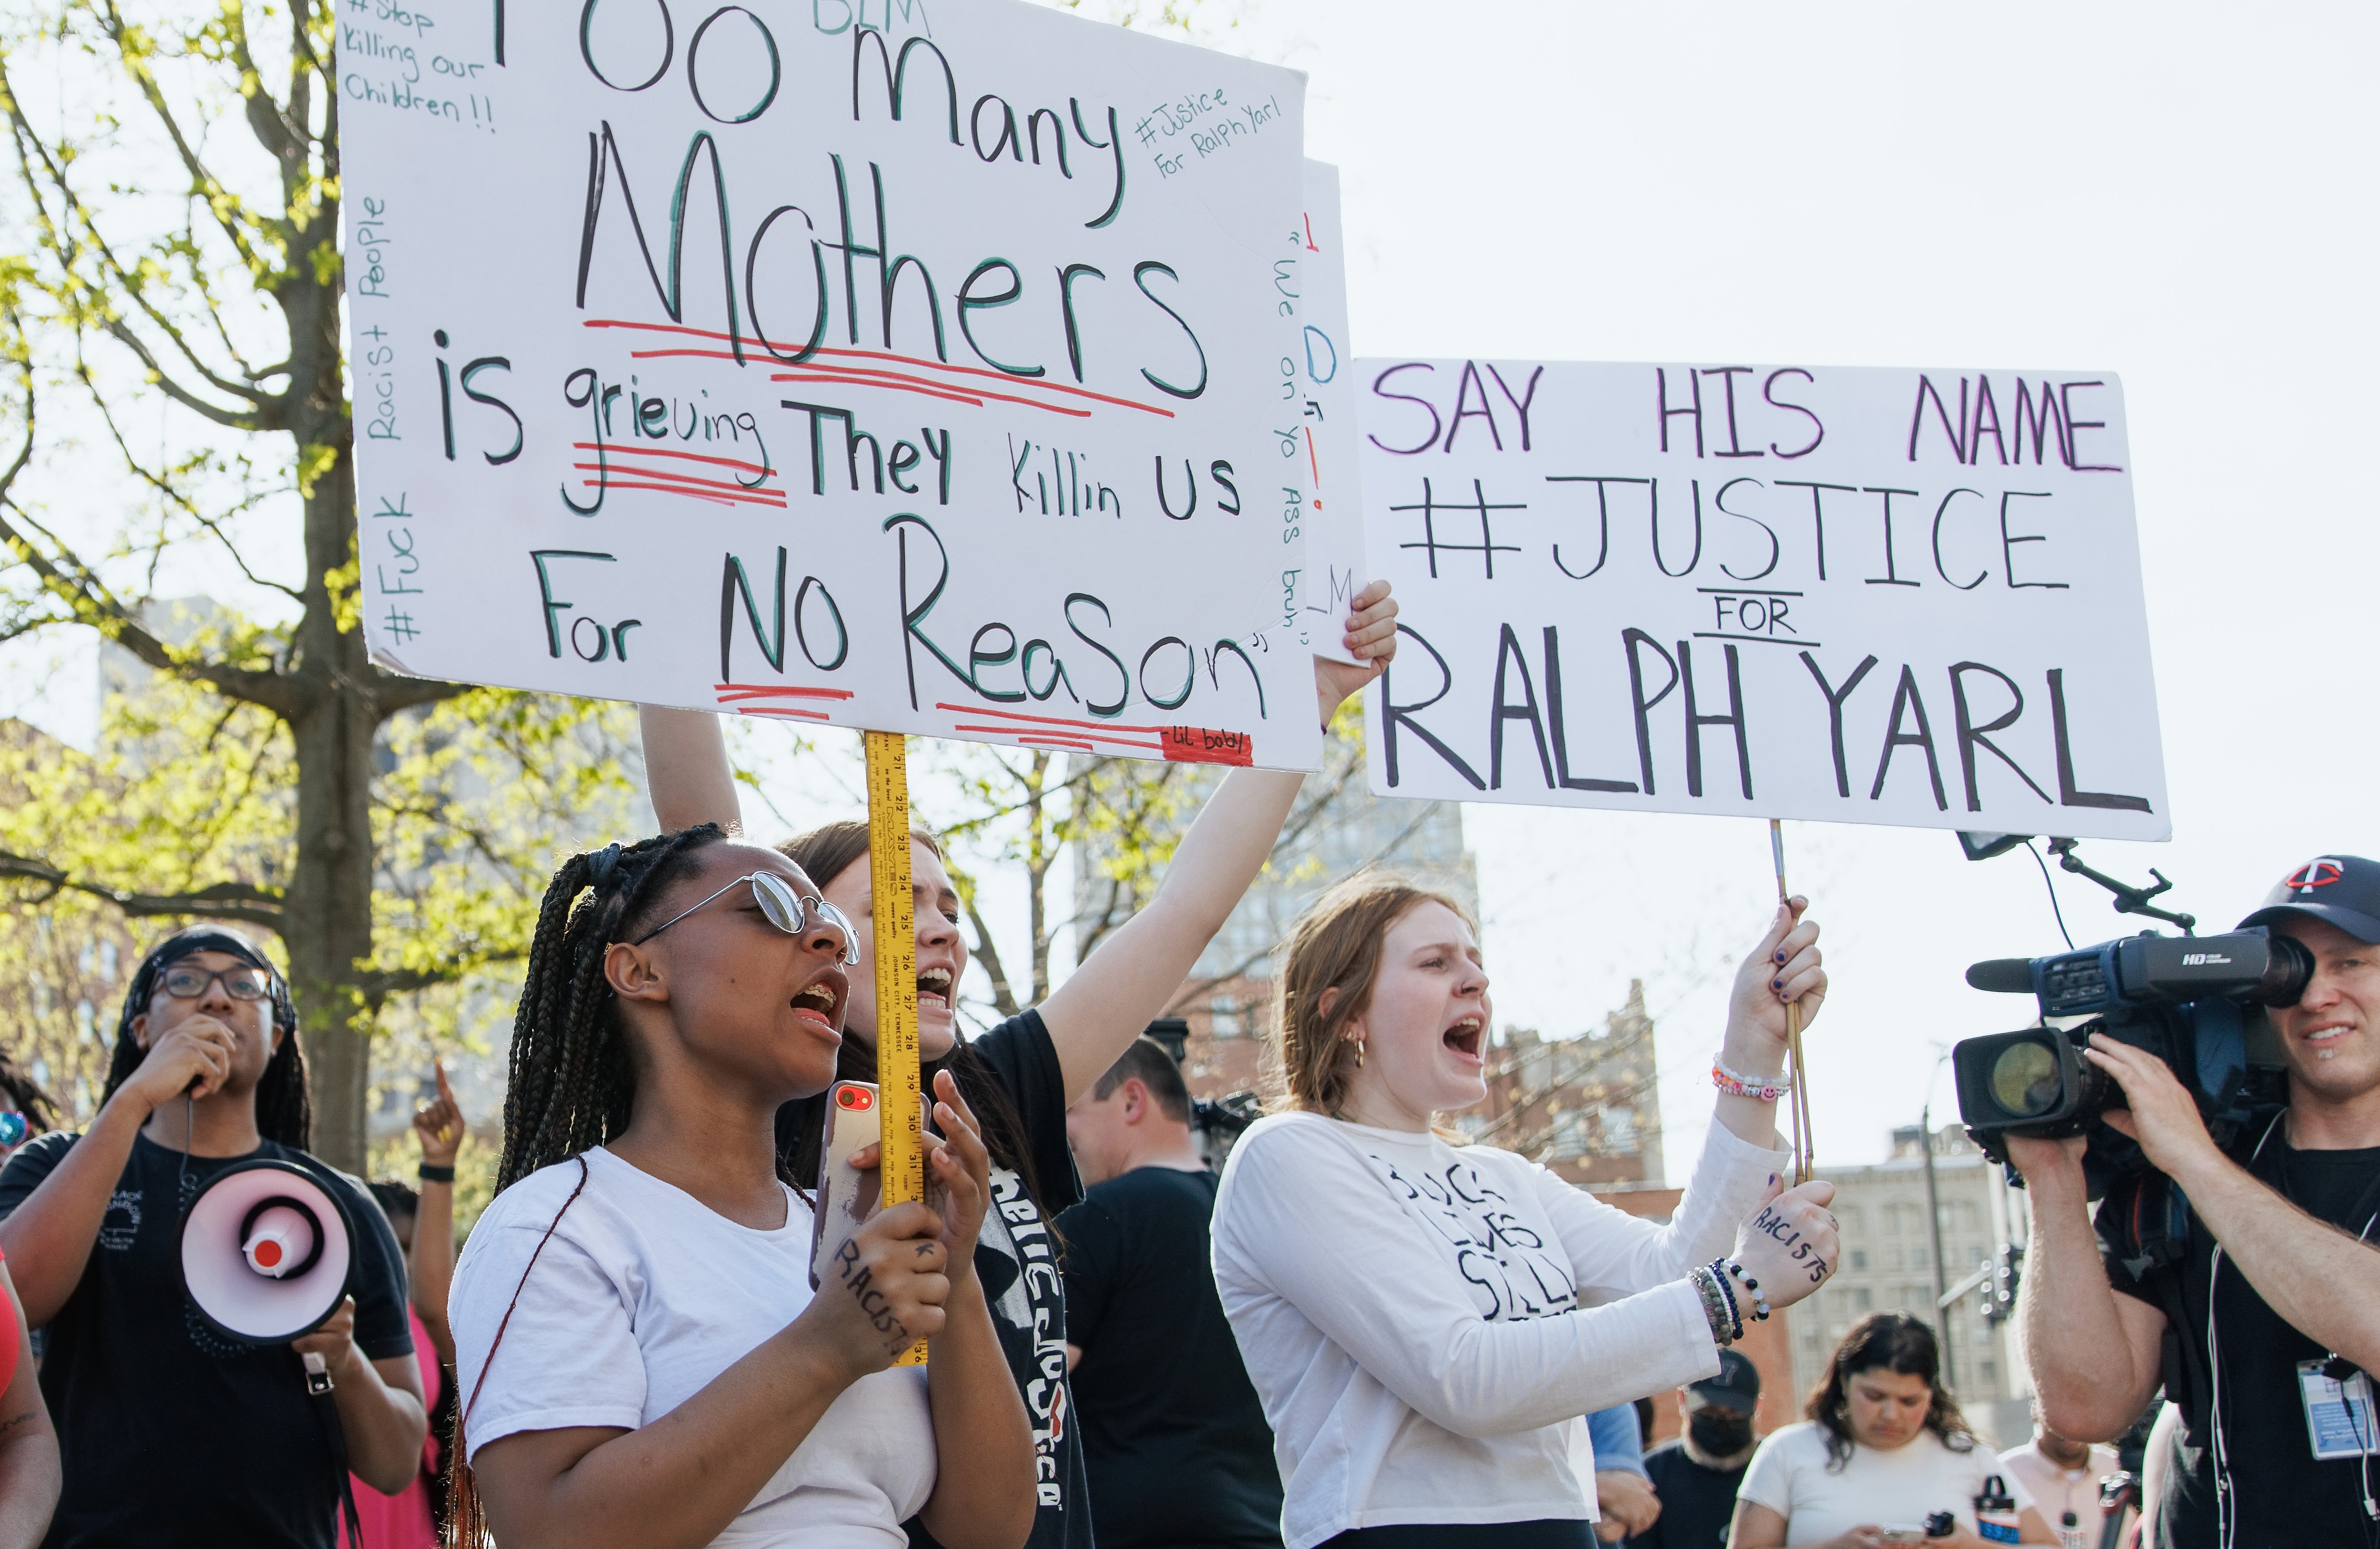 Personas que protestan por el tiroteo de Ralph Yarl